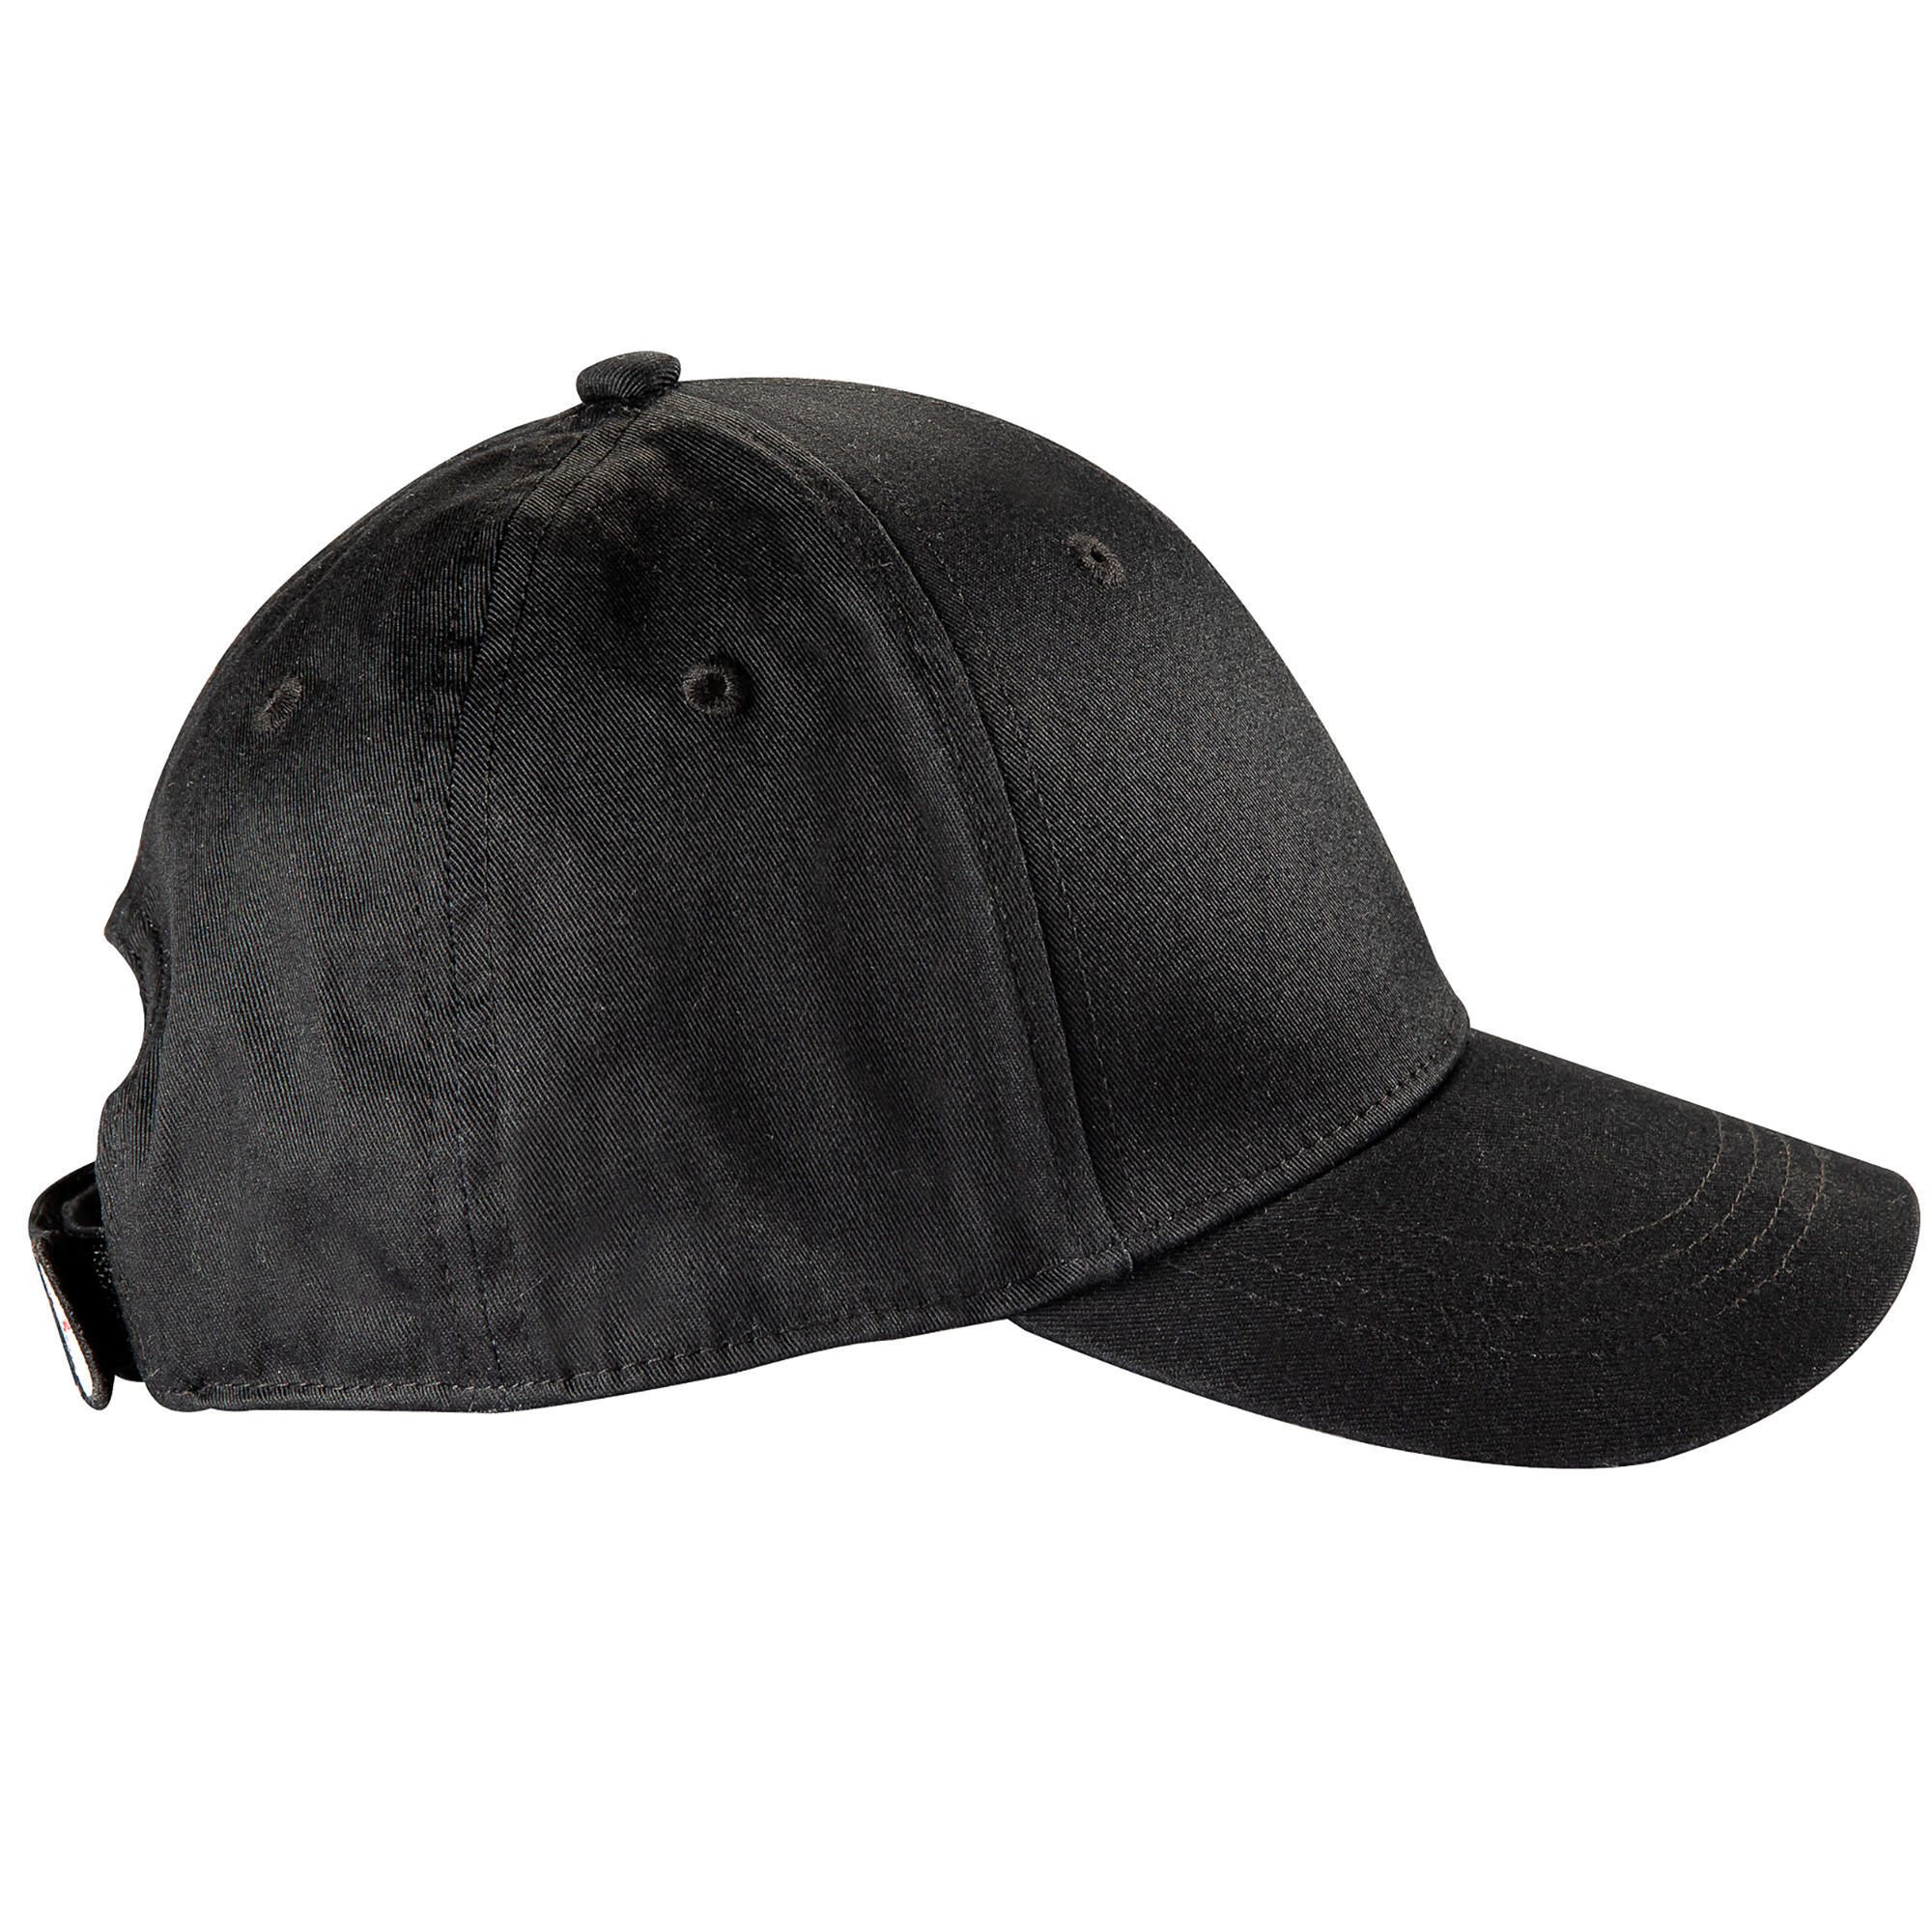 BASEBALL CAP BA500 Black JR 4/8